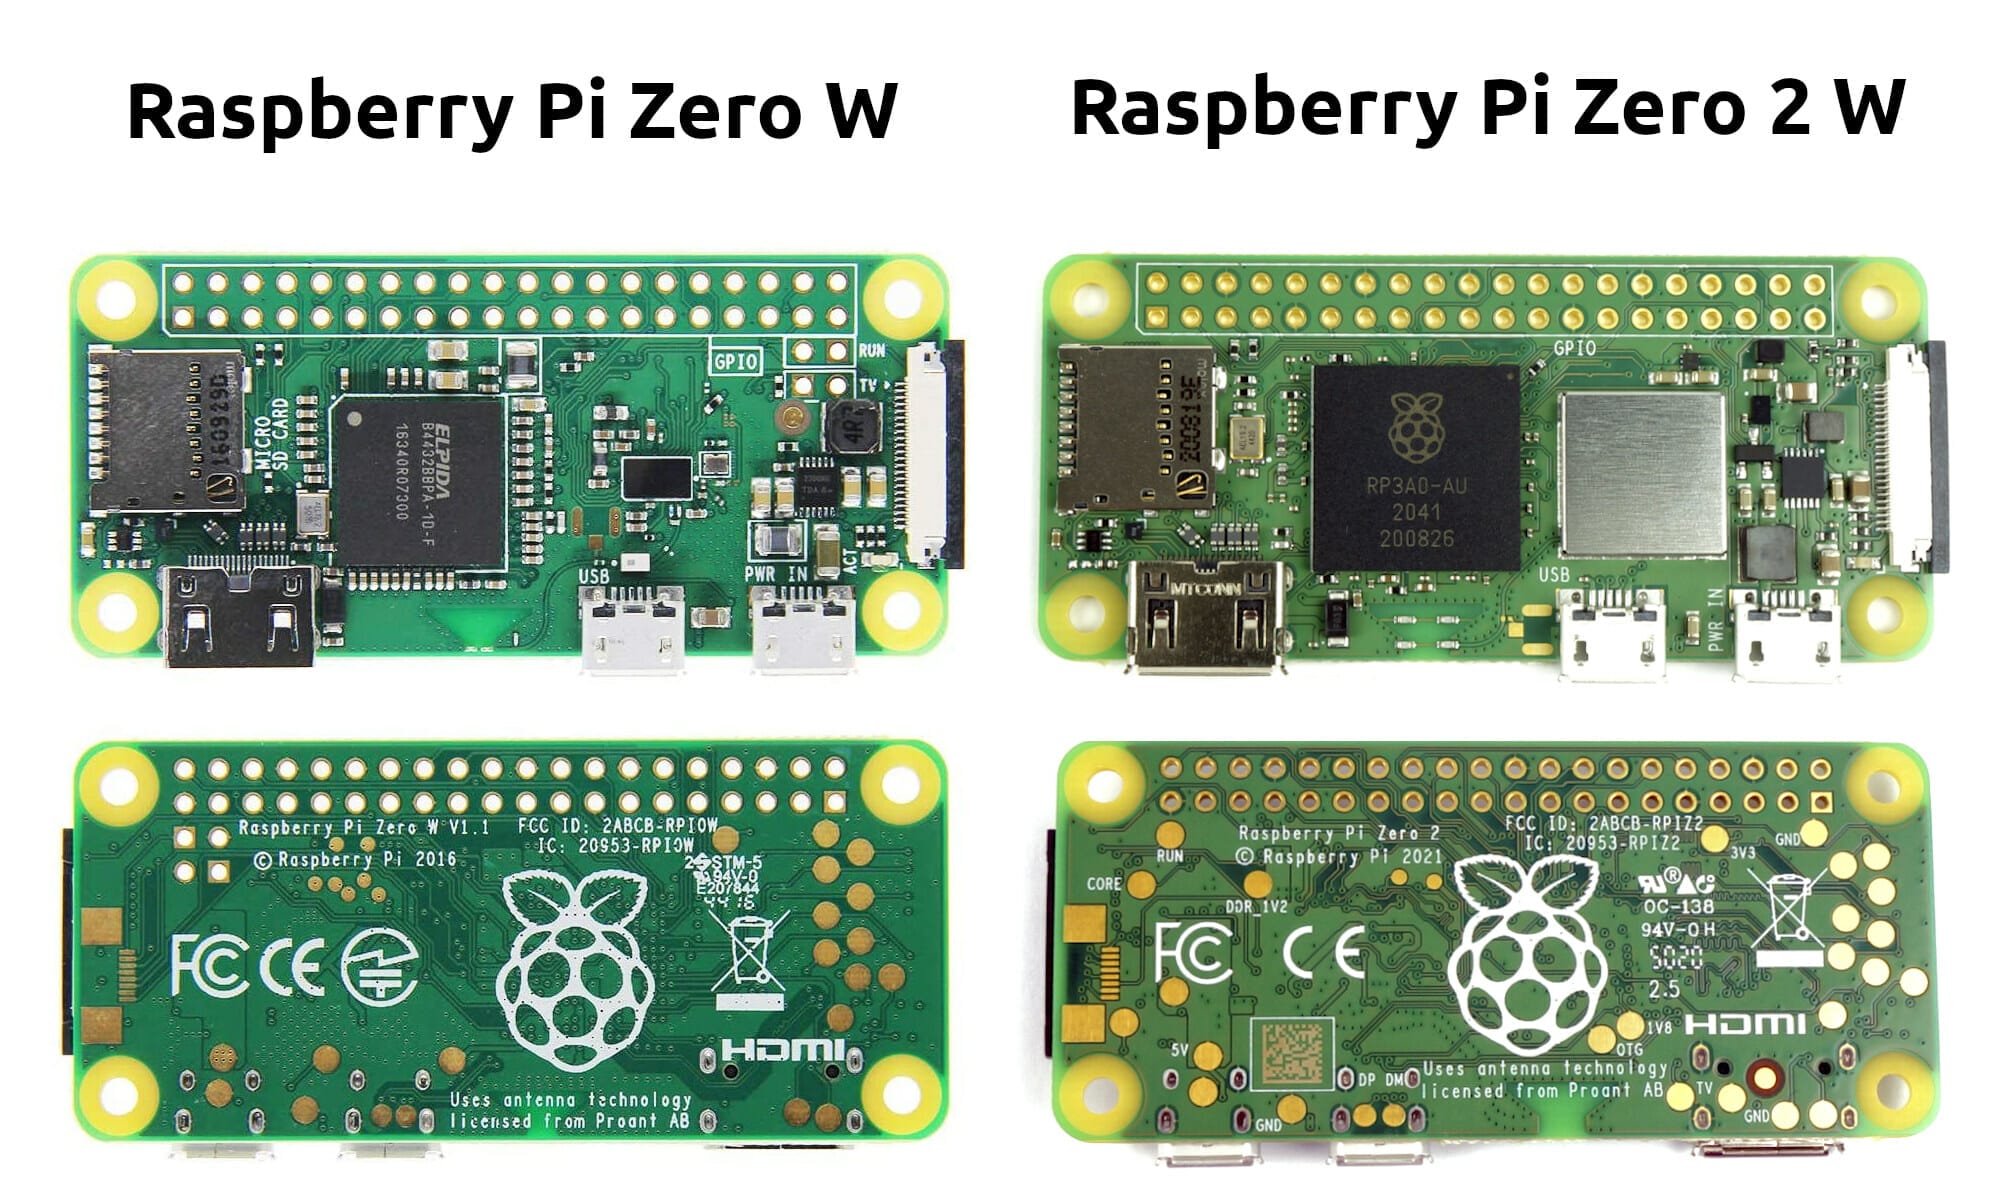 Raspberry Pi Zero 2 W and Zero W features comparison CNX Software